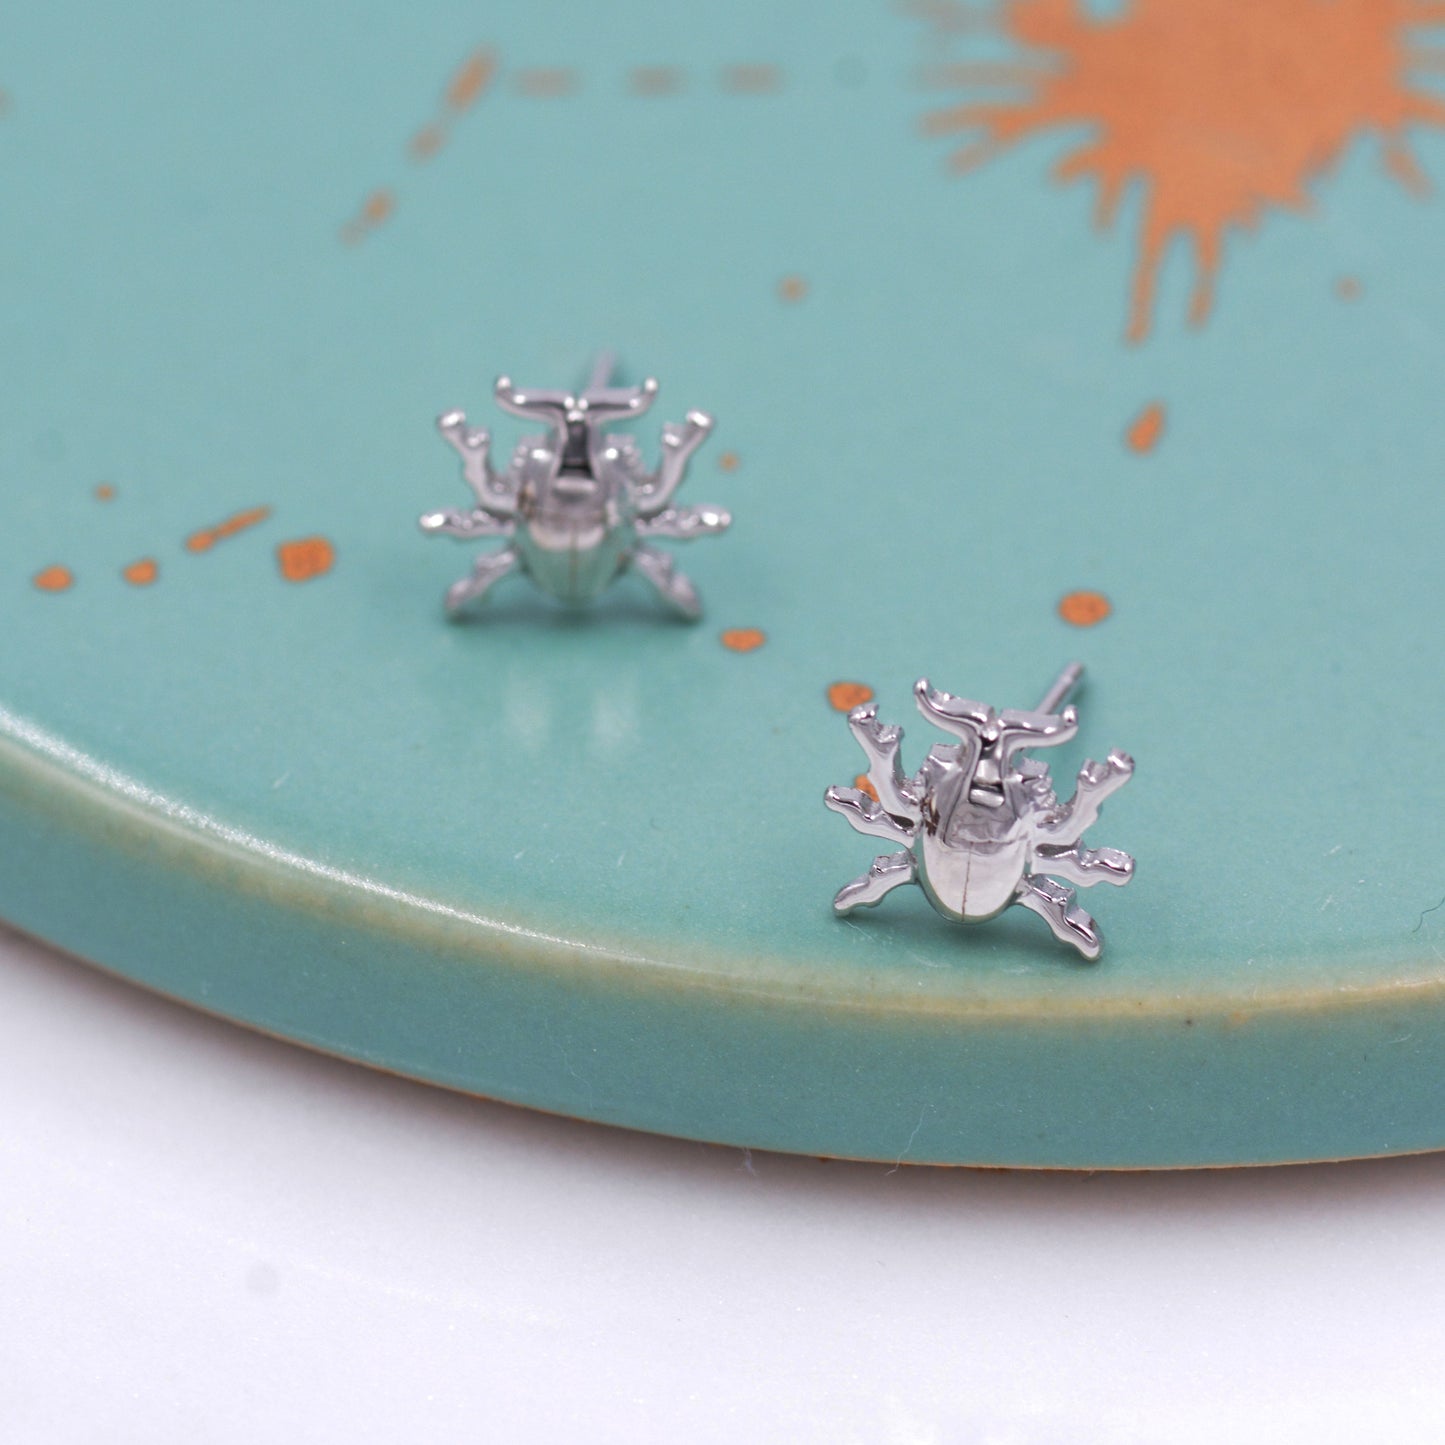 Stag Beetle Stud Earrings in Sterling Silver, Cute Bug Stud, Cute and Quirky Stud Earrings